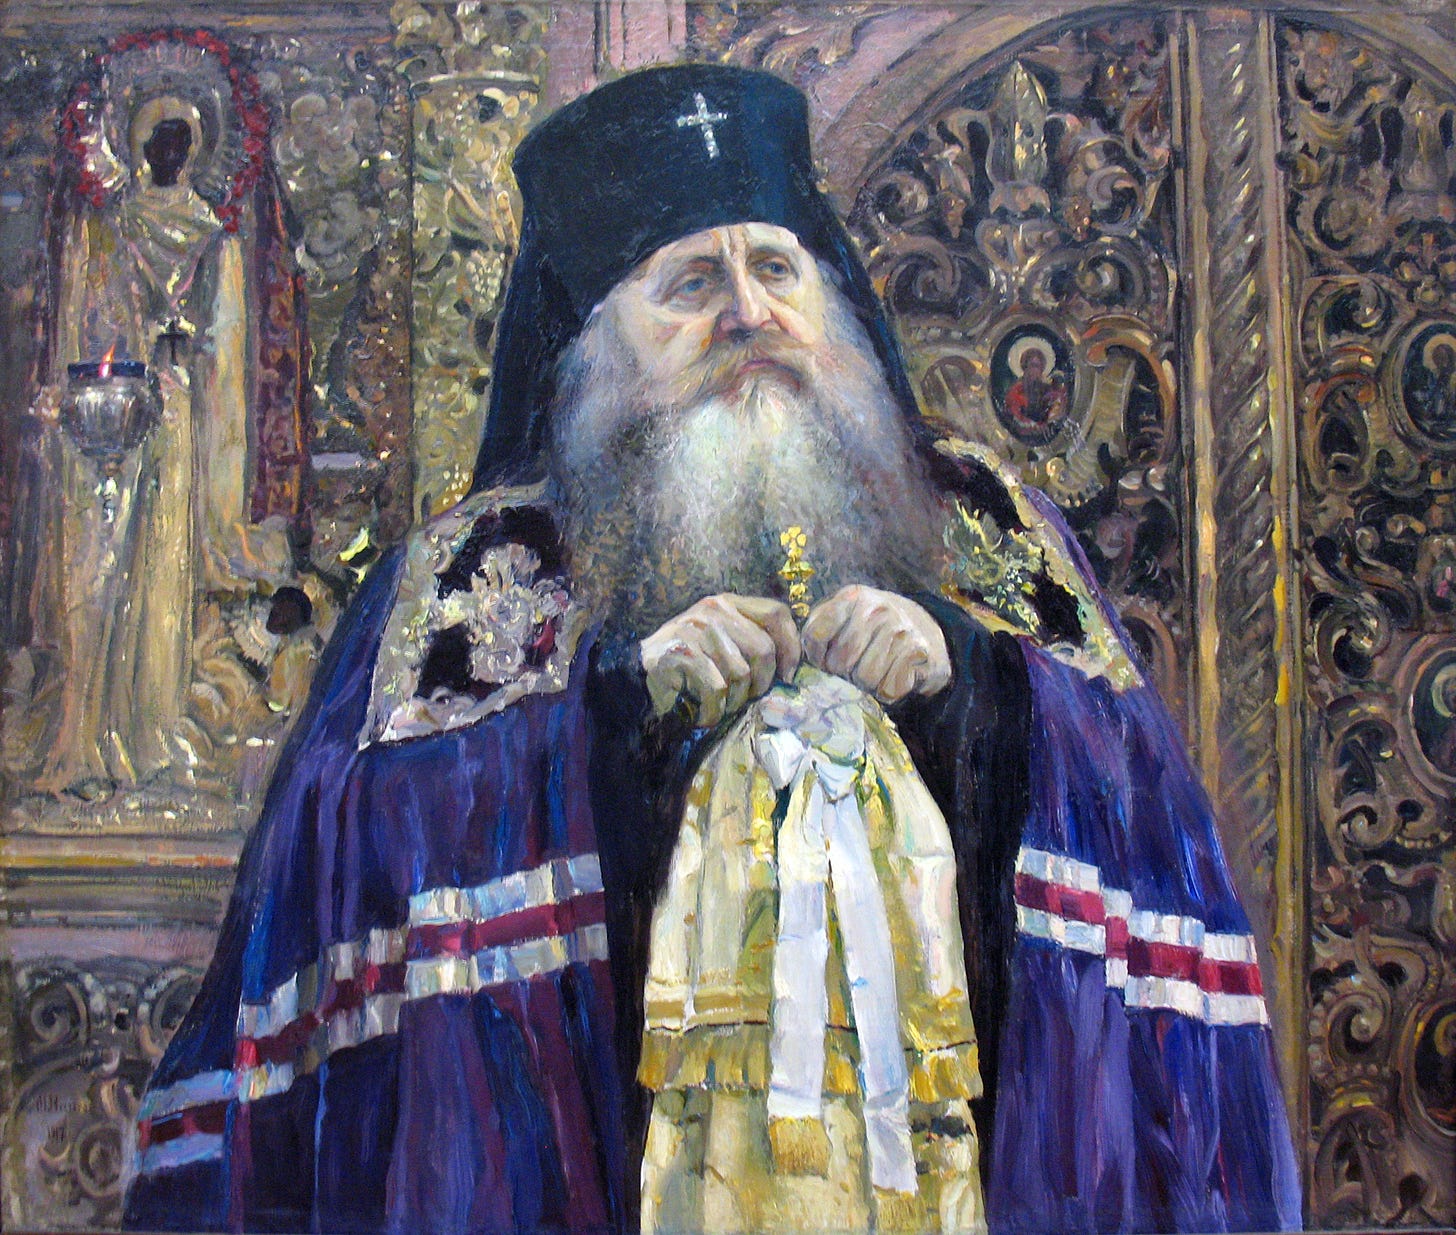 https://upload.wikimedia.org/wikipedia/commons/8/86/1917_Nesterow_Erzbischof_Antonius_anagoria.JPG